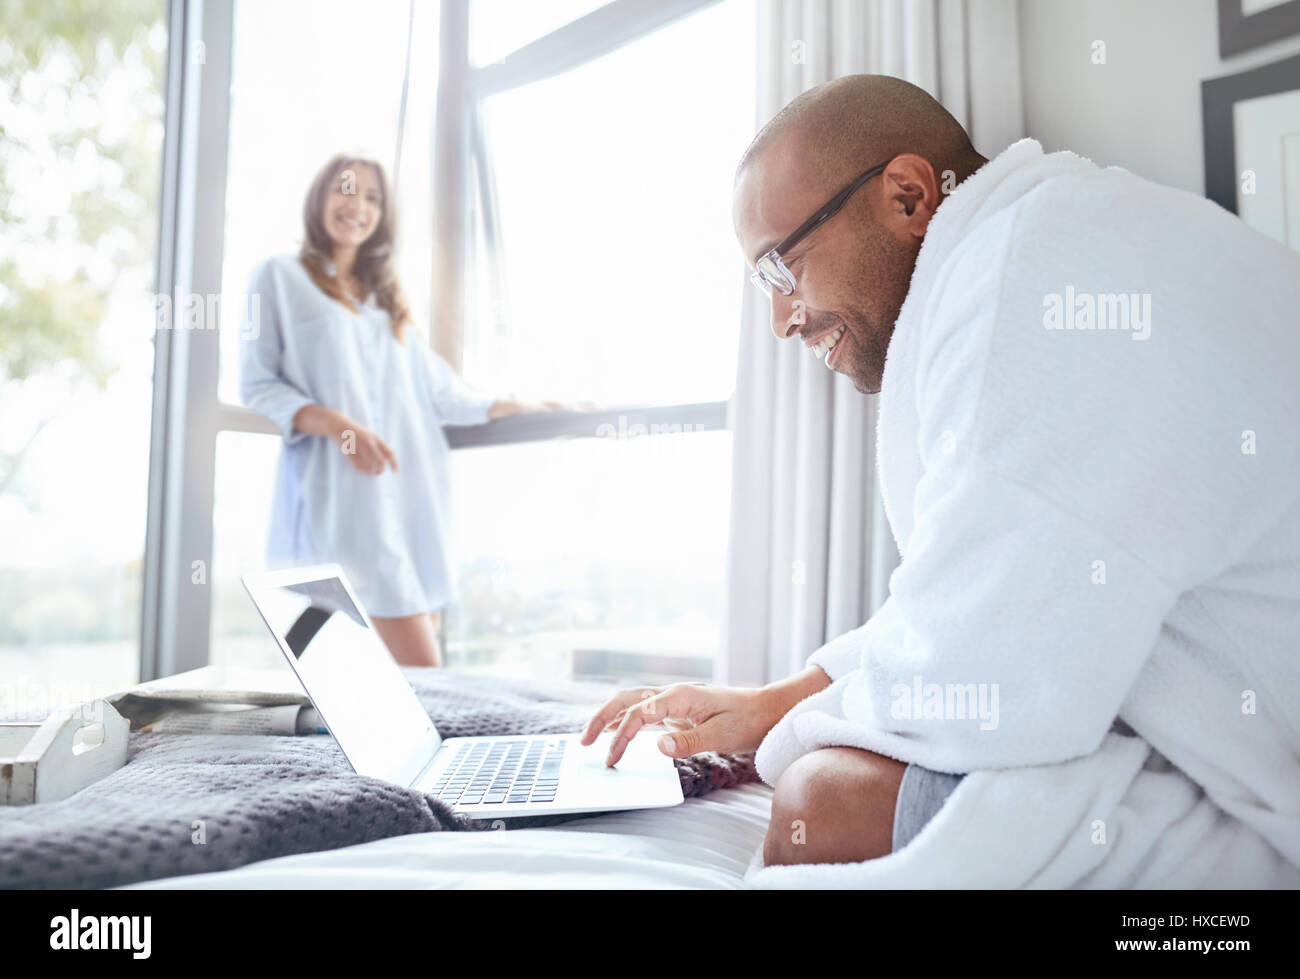 Lächelnde Frau beobachten Freund im Bademantel lesen Laptop auf dem Bett Stockfoto